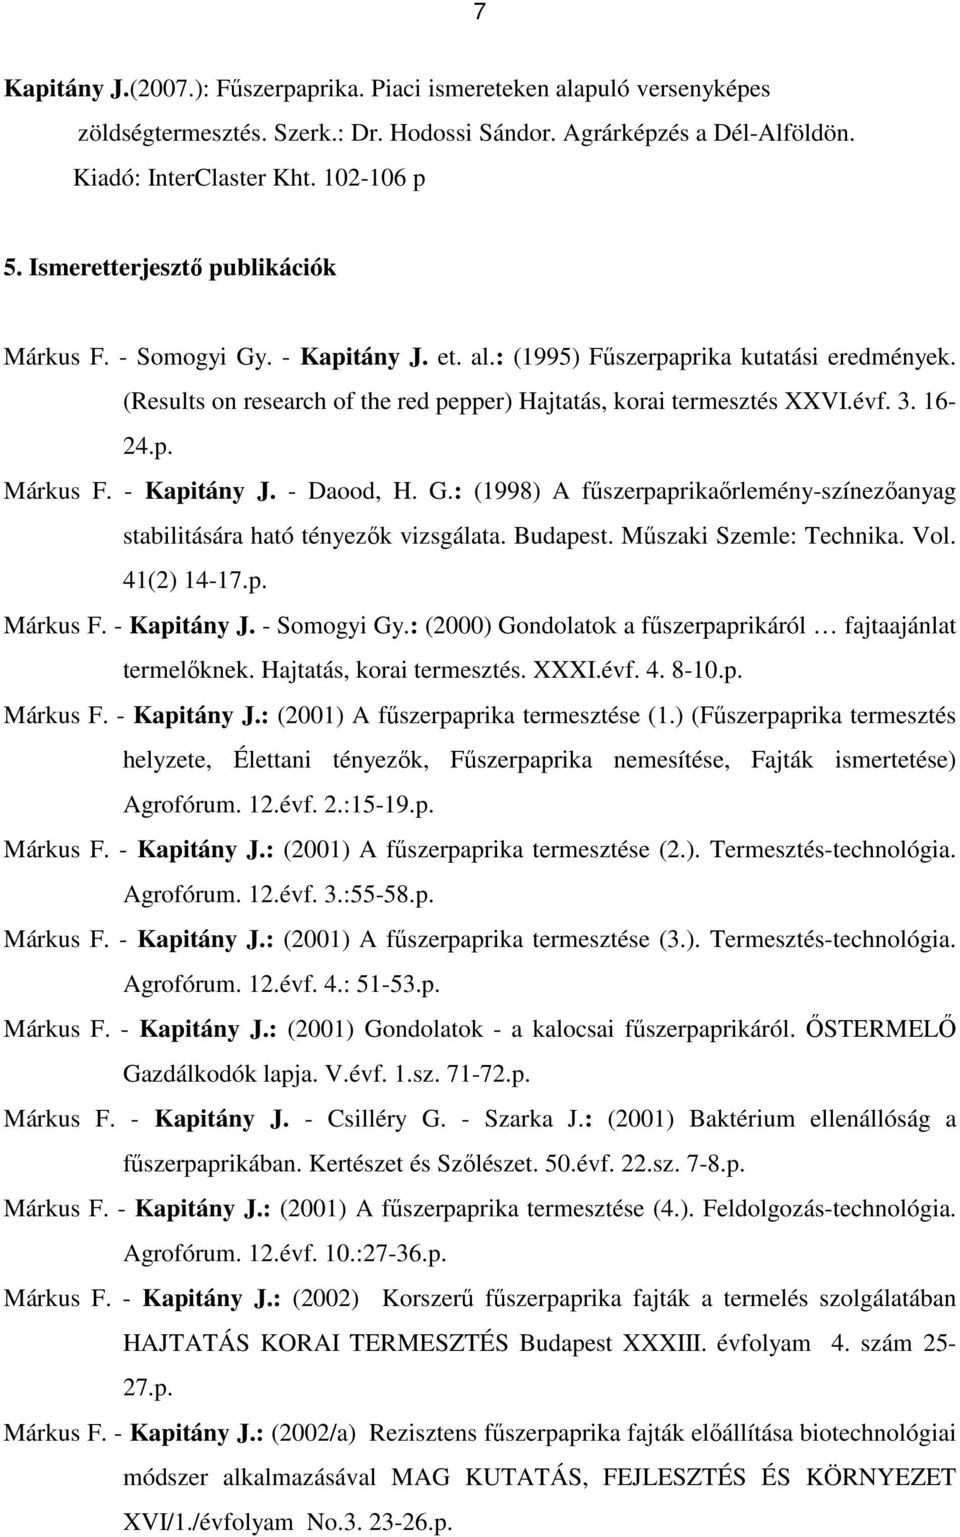 16-24.p. Márkus F. - Kapitány J. - Daood, H. G.: (1998) A főszerpaprikaırlemény-színezıanyag stabilitására ható tényezık vizsgálata. Budapest. Mőszaki Szemle: Technika. Vol. 41(2) 14-17.p. Márkus F. - Kapitány J. - Somogyi Gy.